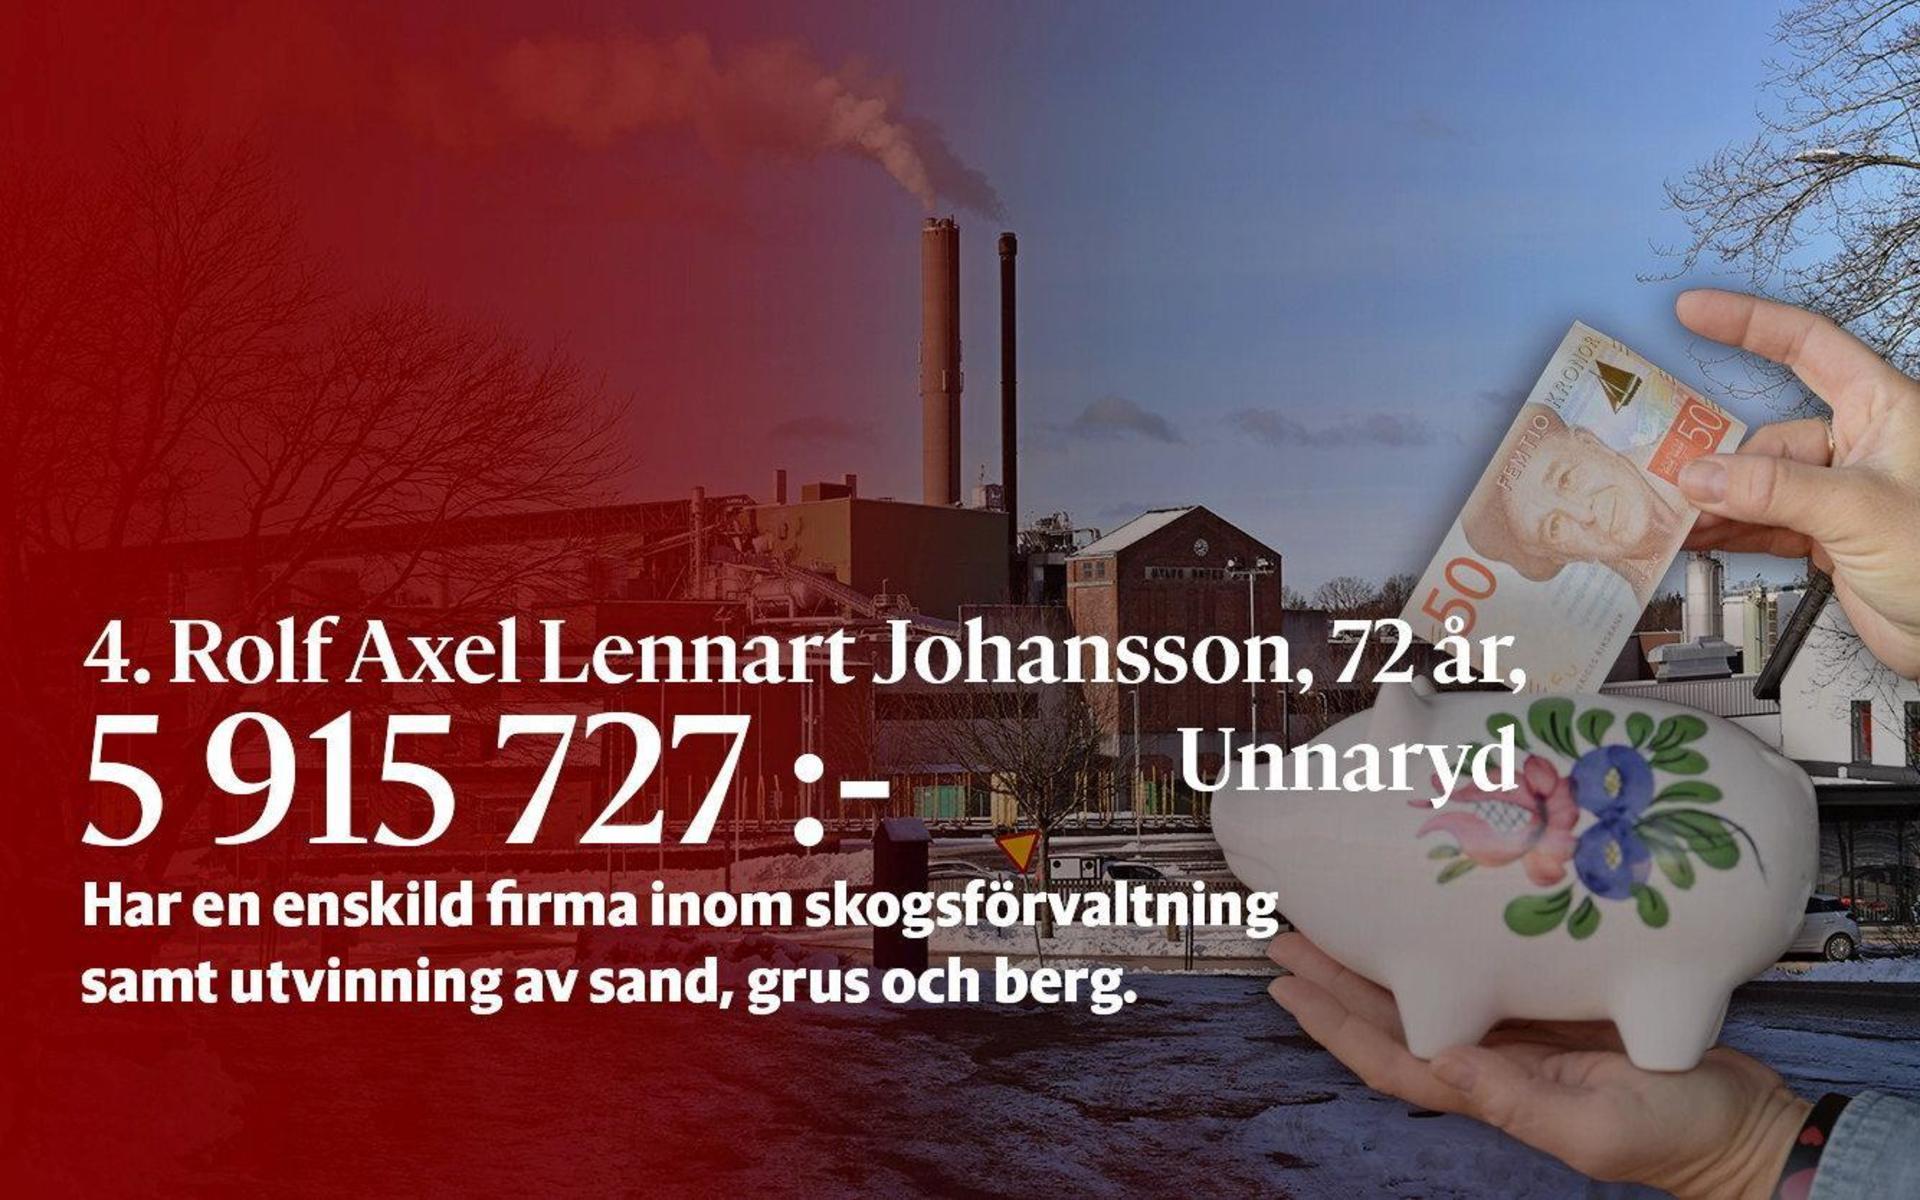 4. Rolf Axel Lennart Johansson har en enskild firma inom skogsförvaltning samt utvinning av sand, grus och berg.